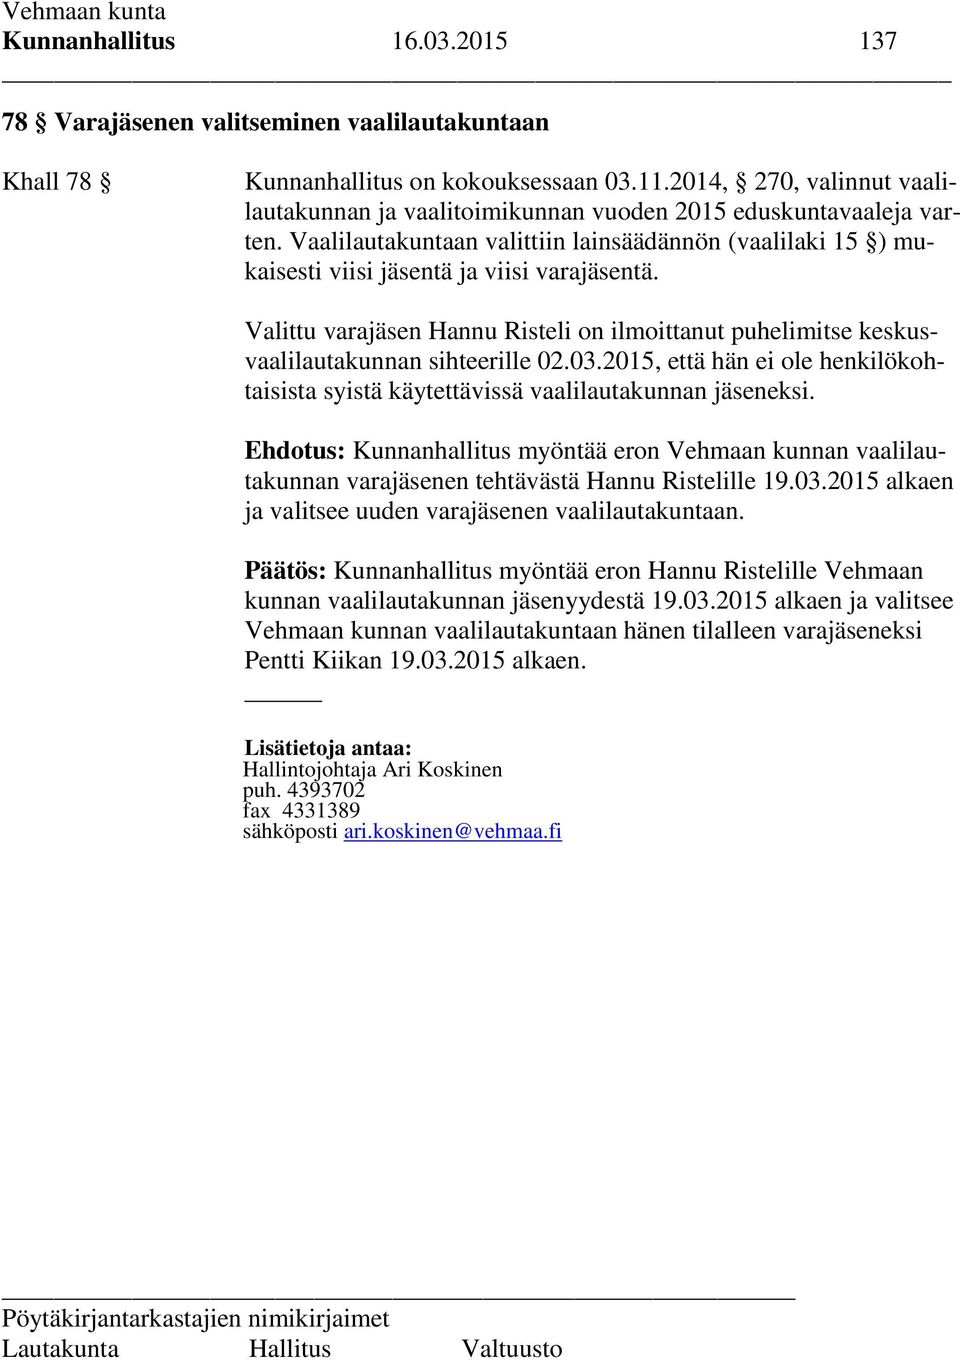 Valittu varajäsen Hannu Risteli on ilmoittanut puhelimitse keskusvaalilautakunnan sihteerille 02.03.2015, että hän ei ole henkilökohtaisista syistä käytettävissä vaalilautakunnan jäseneksi.